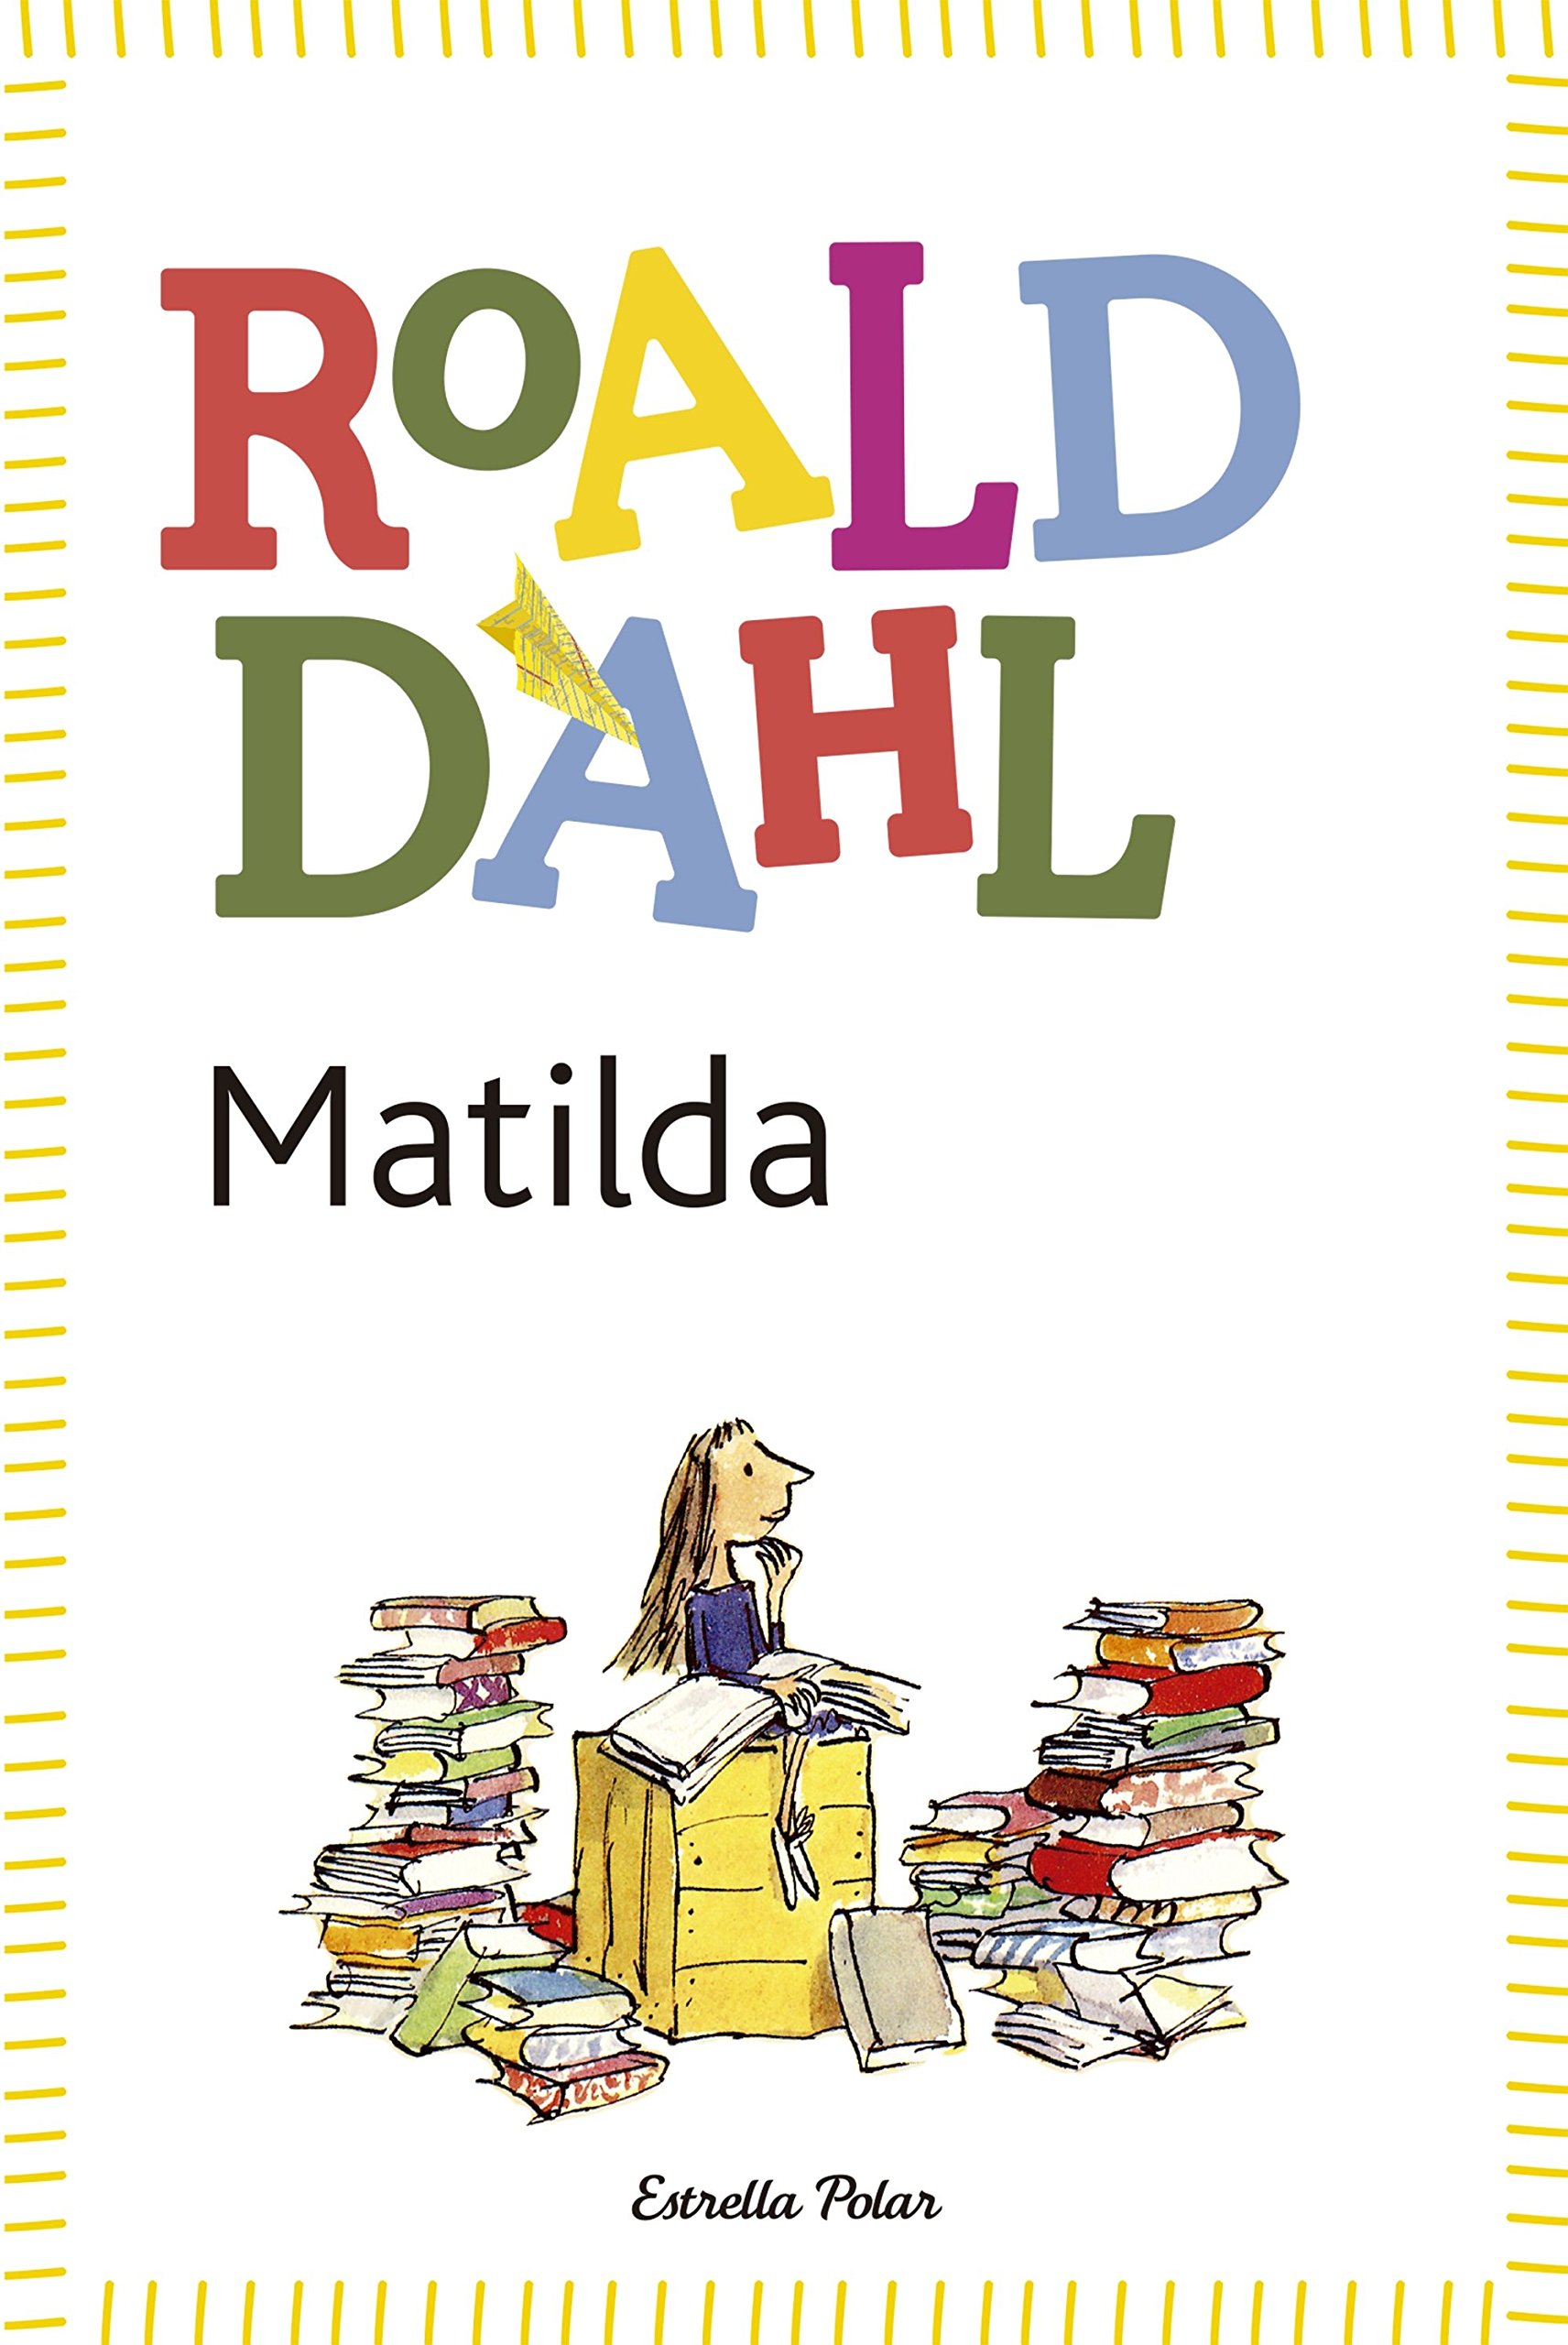 Roald dahl s matilda. Dahl Roald "Matilda". Matilda by Roald Dahl.